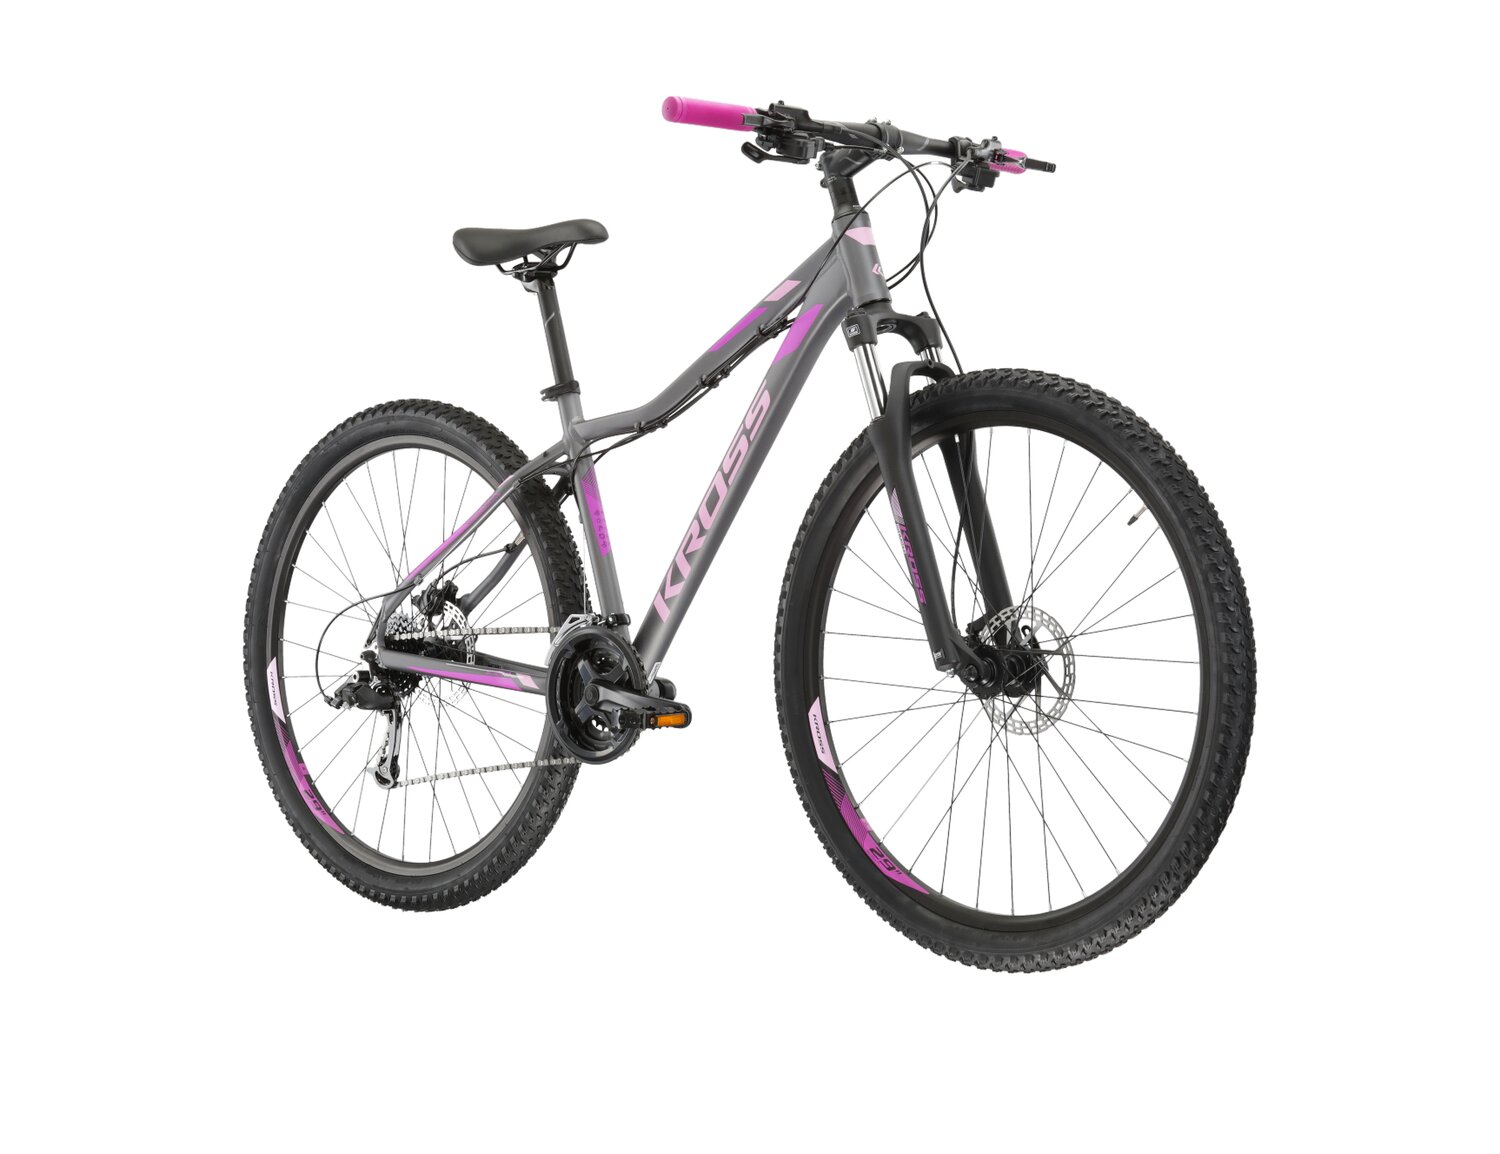 Damski rower górski MTB Woman Kross Lea 5.0 MS na aluminiowej ramie w kolorze grafitowym wyposażony w osprzęt Microshift 